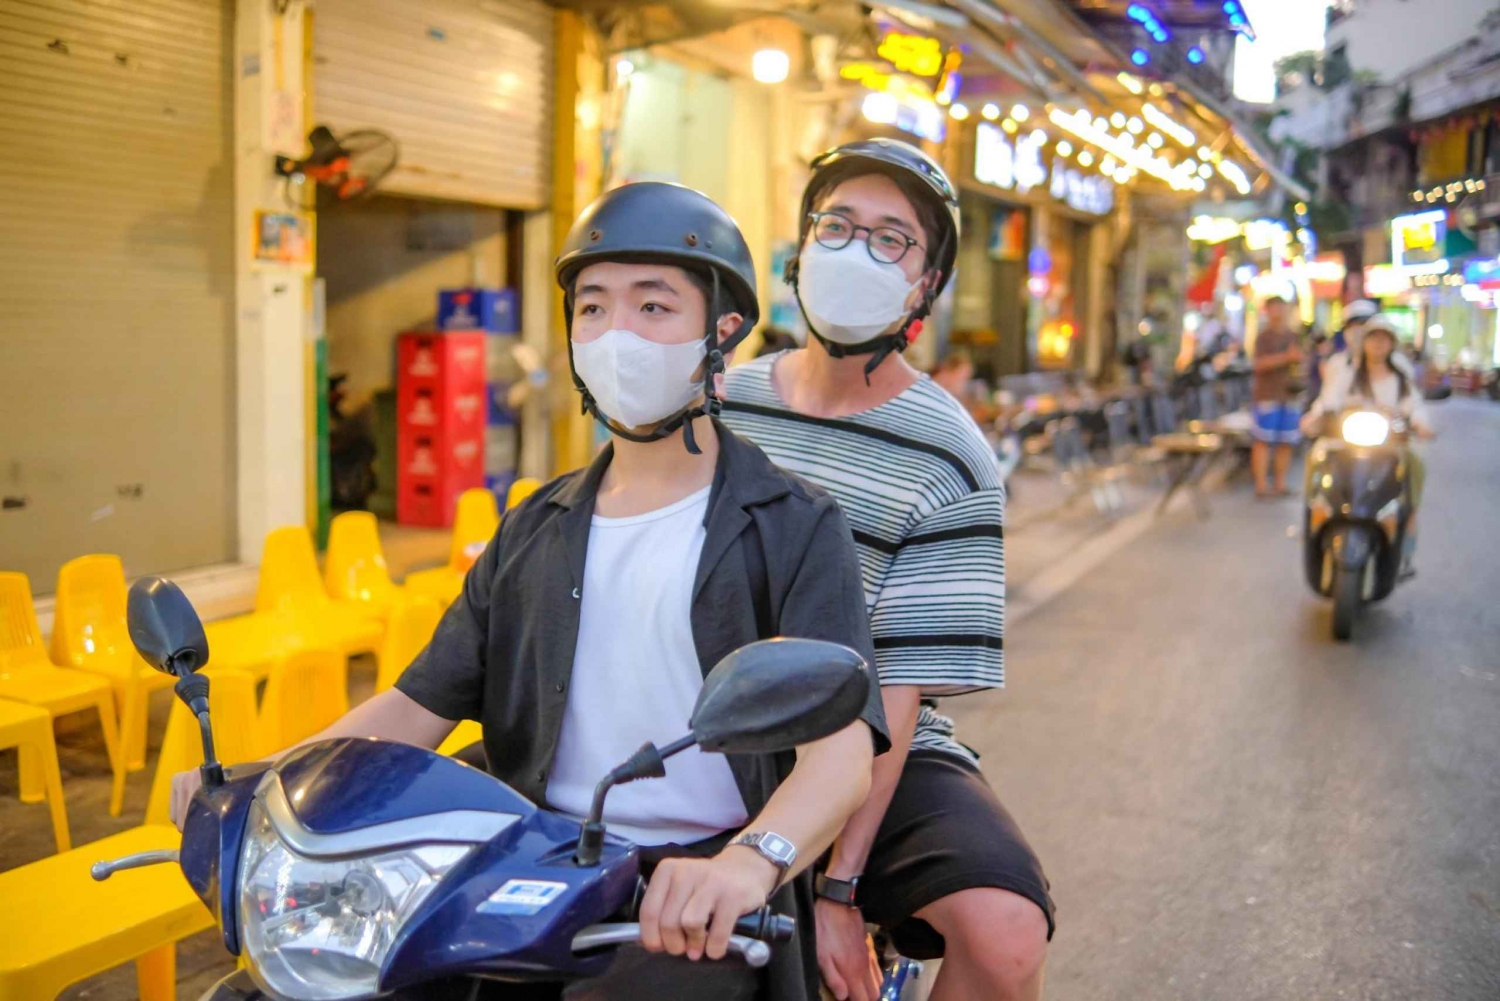 Tour di mezza giornata di Hanoi in moto per i buongustai